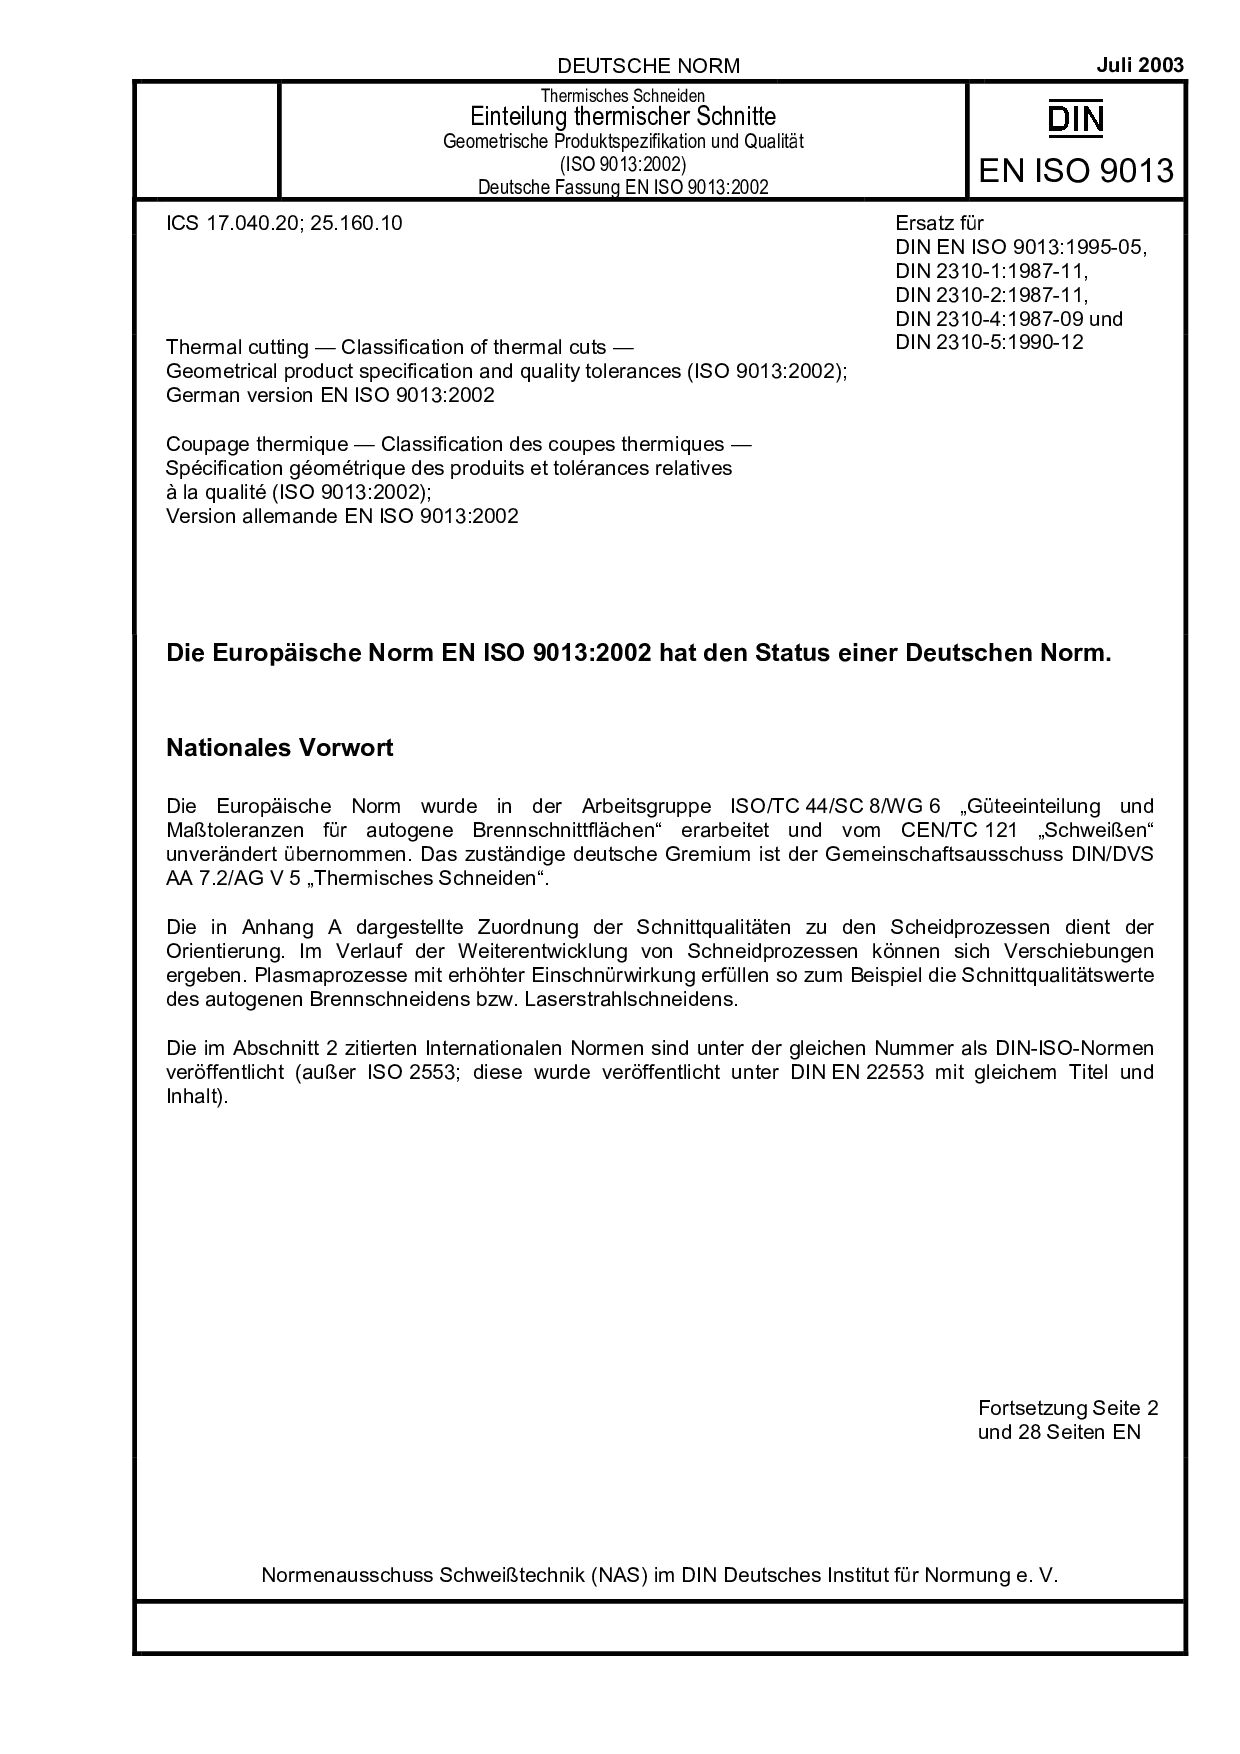 DIN EN ISO 9013:2003封面图